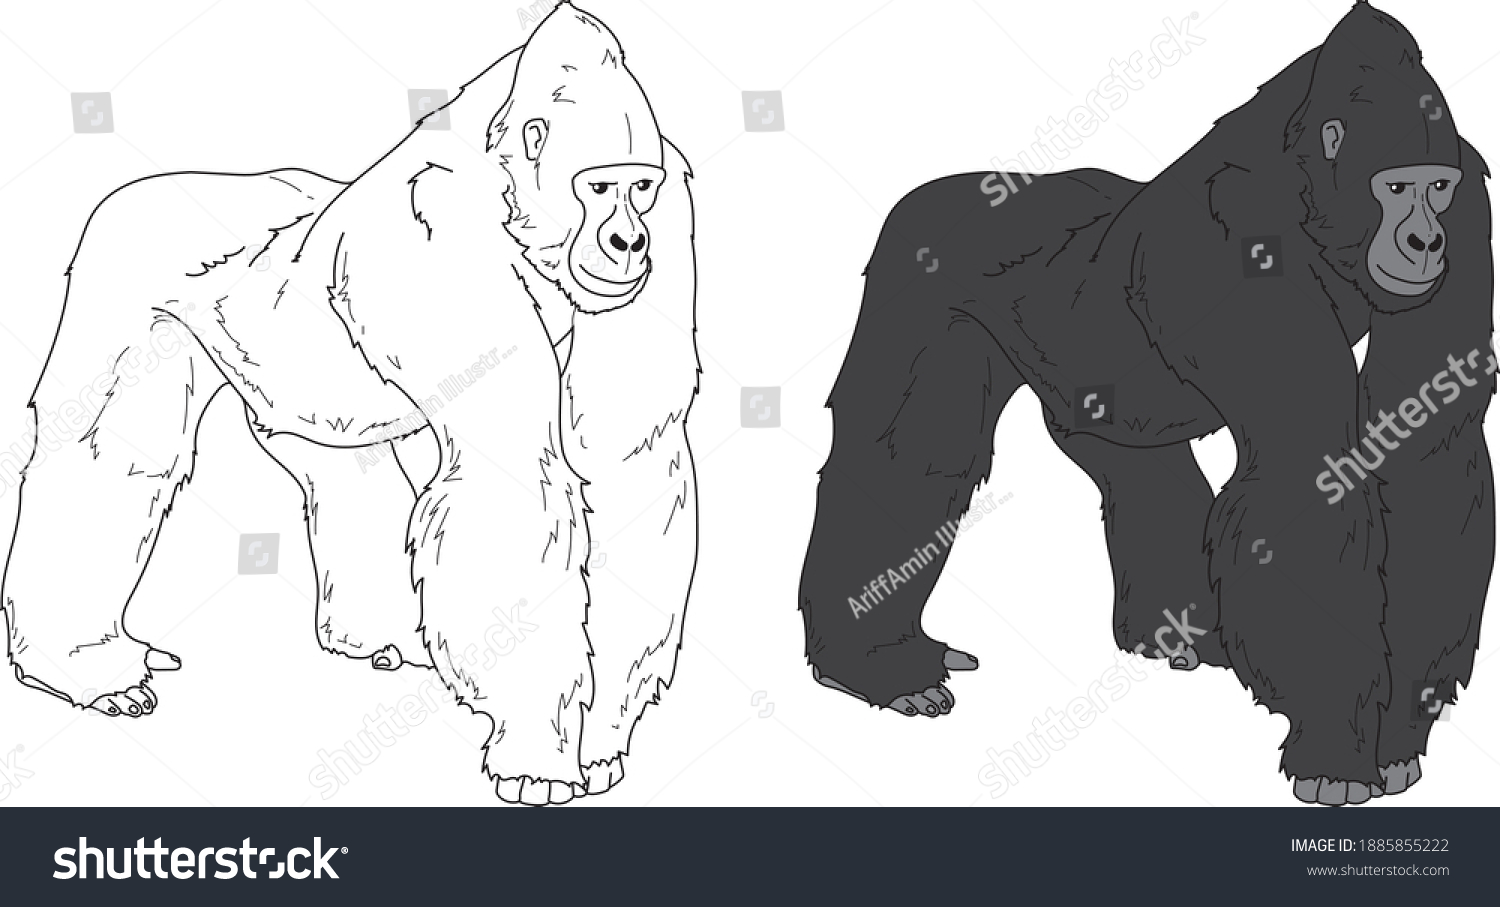 4,361 Gorilla sketch Images, Stock Photos & Vectors | Shutterstock